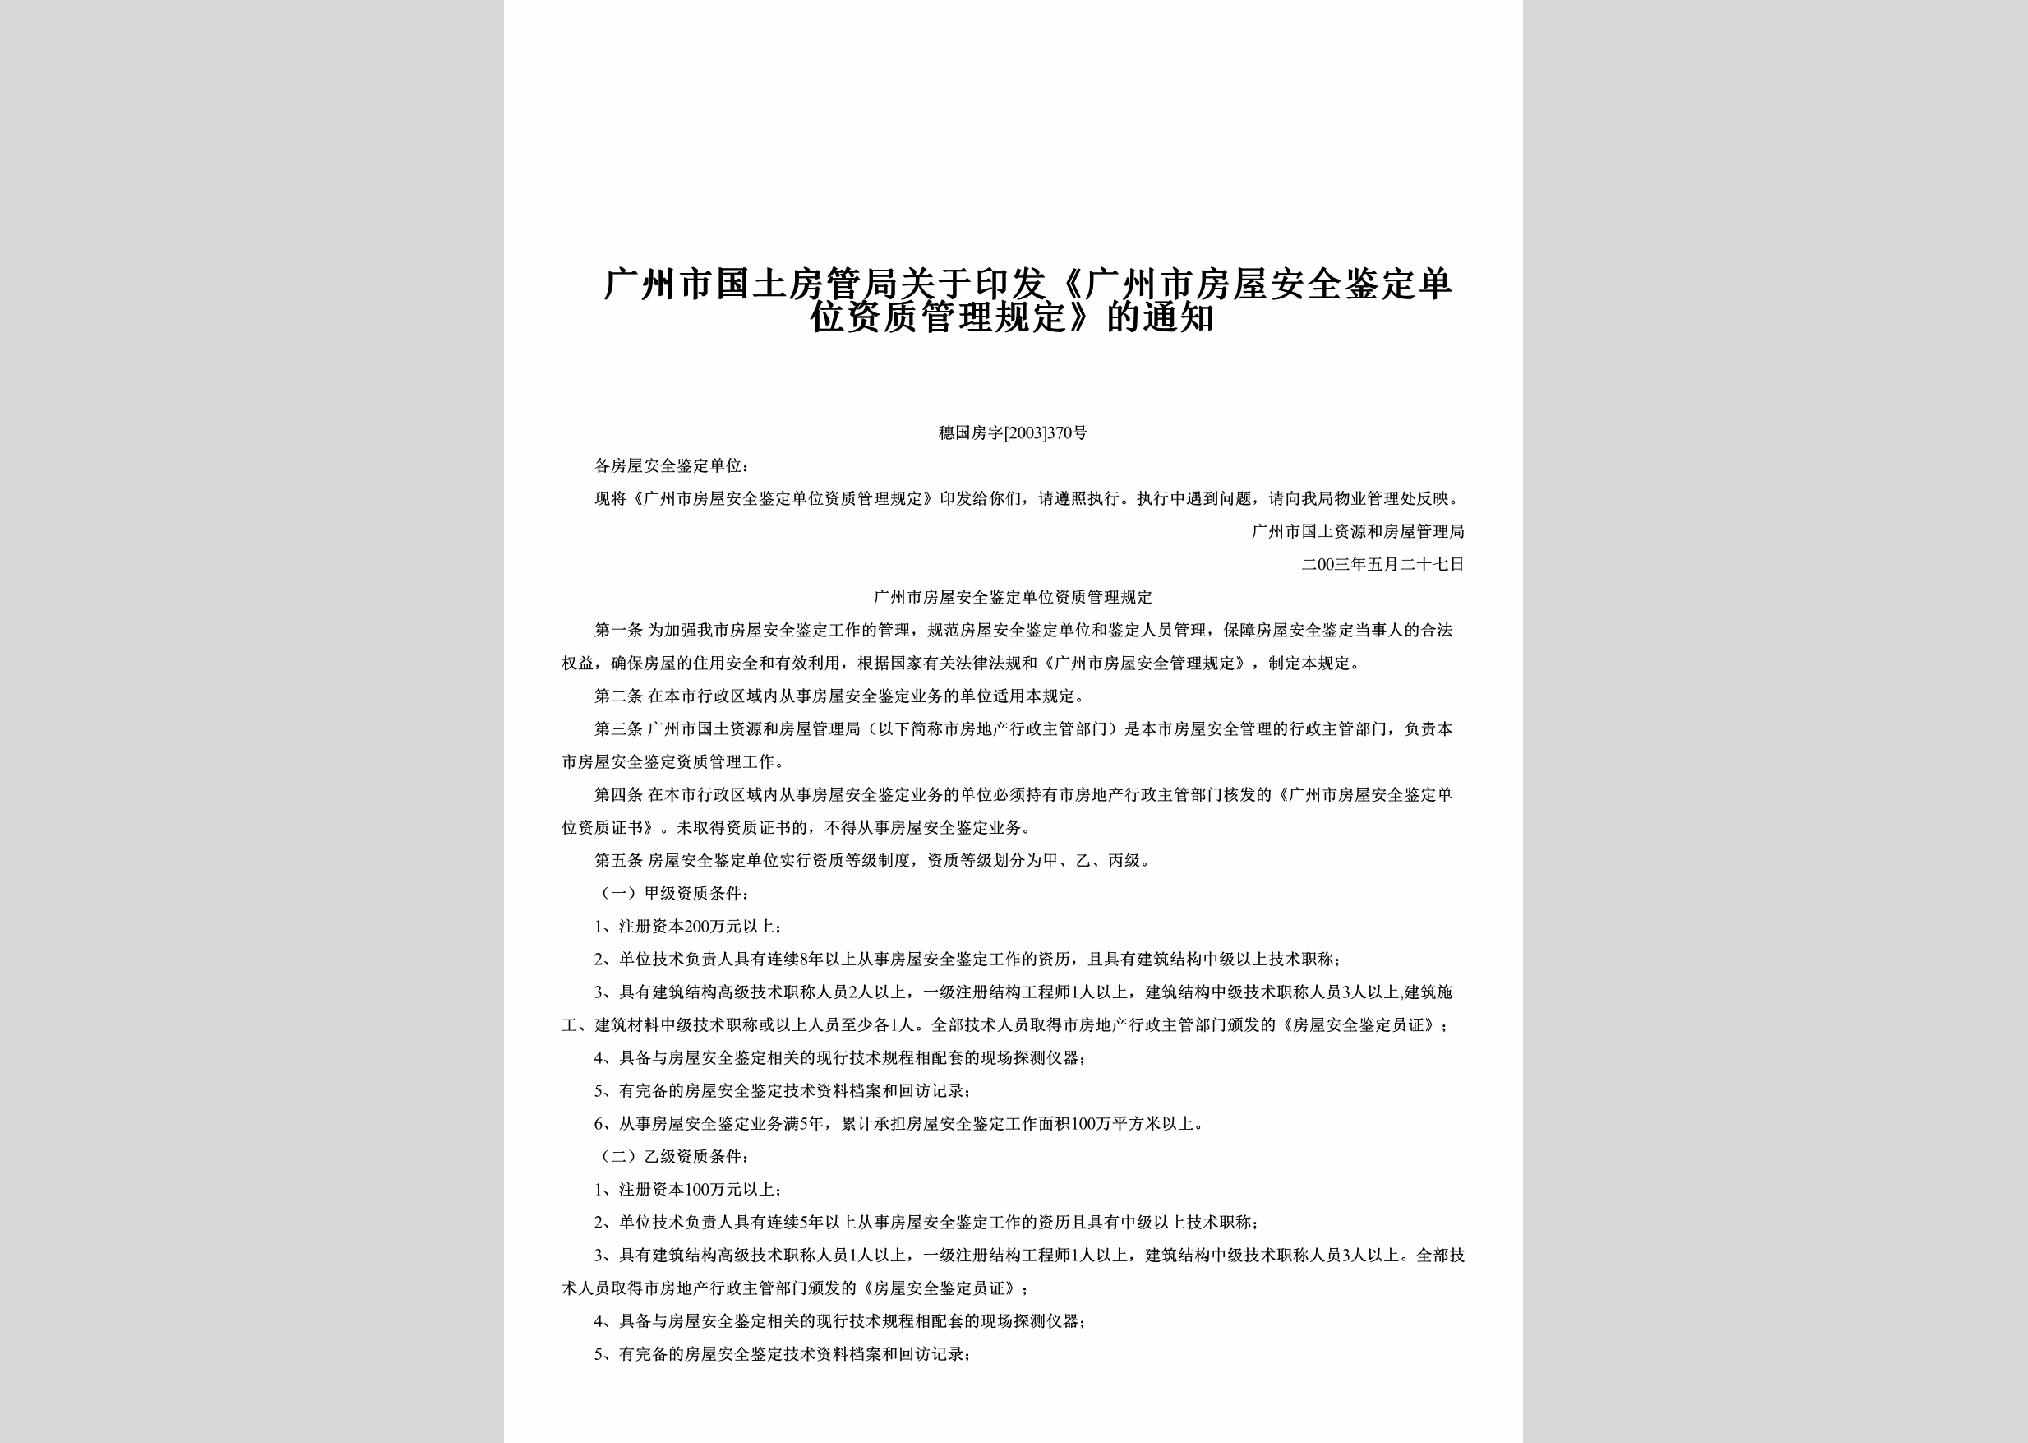 穗国房字[2003]370号：关于印发《广州市房屋安全鉴定单位资质管理规定》的通知